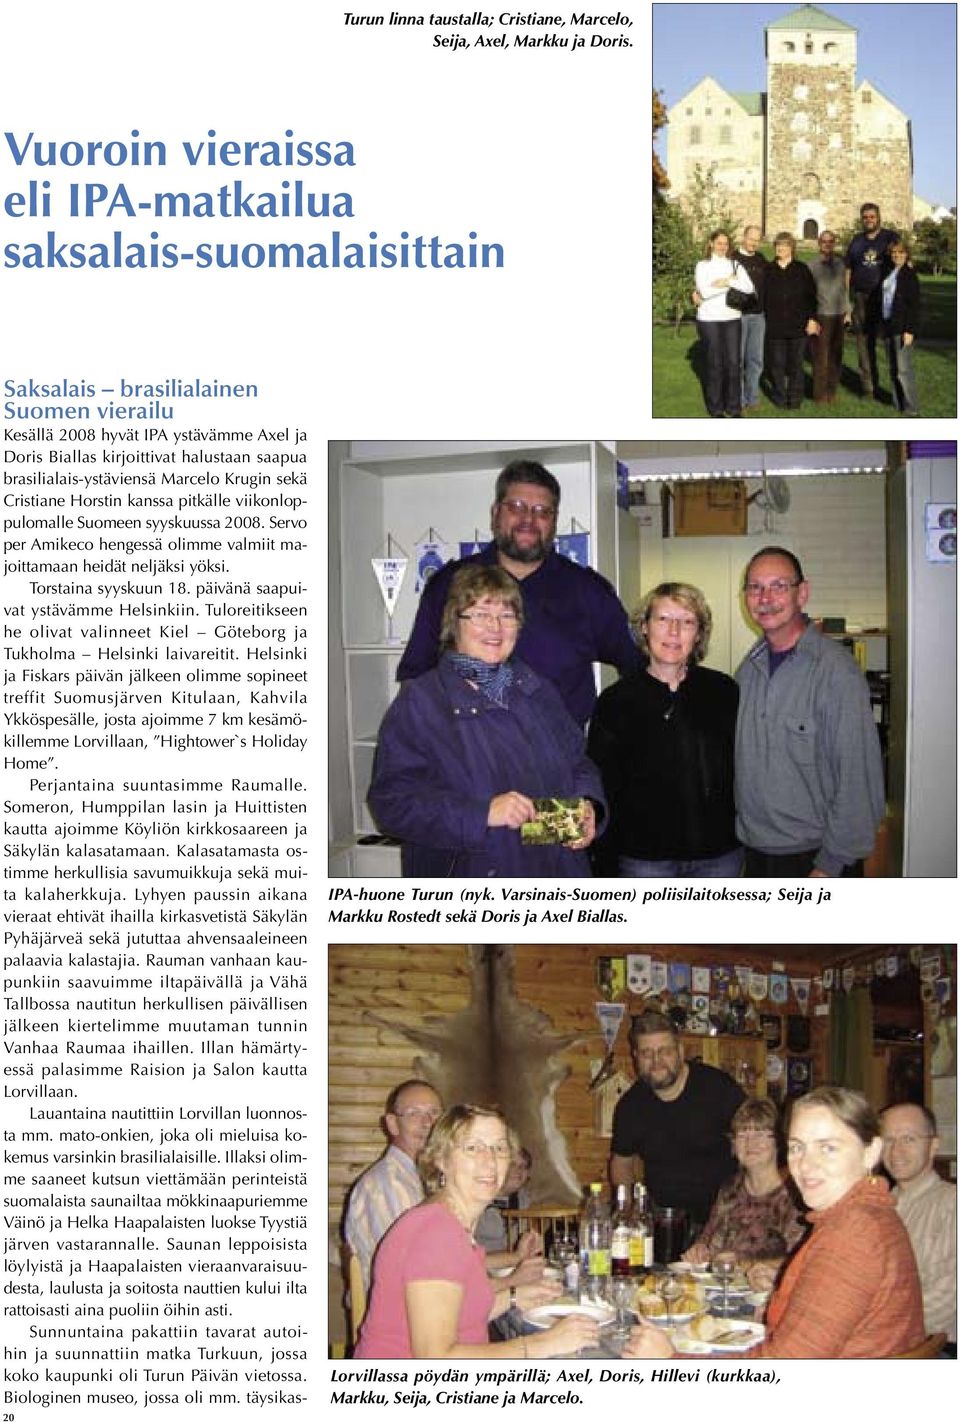 brasilialais-ystäviensä Marcelo Krugin sekä Cristiane Horstin kanssa pitkälle viikonloppulomalle Suomeen syyskuussa 2008. Servo per Amikeco hengessä olimme valmiit majoittamaan heidät neljäksi yöksi.